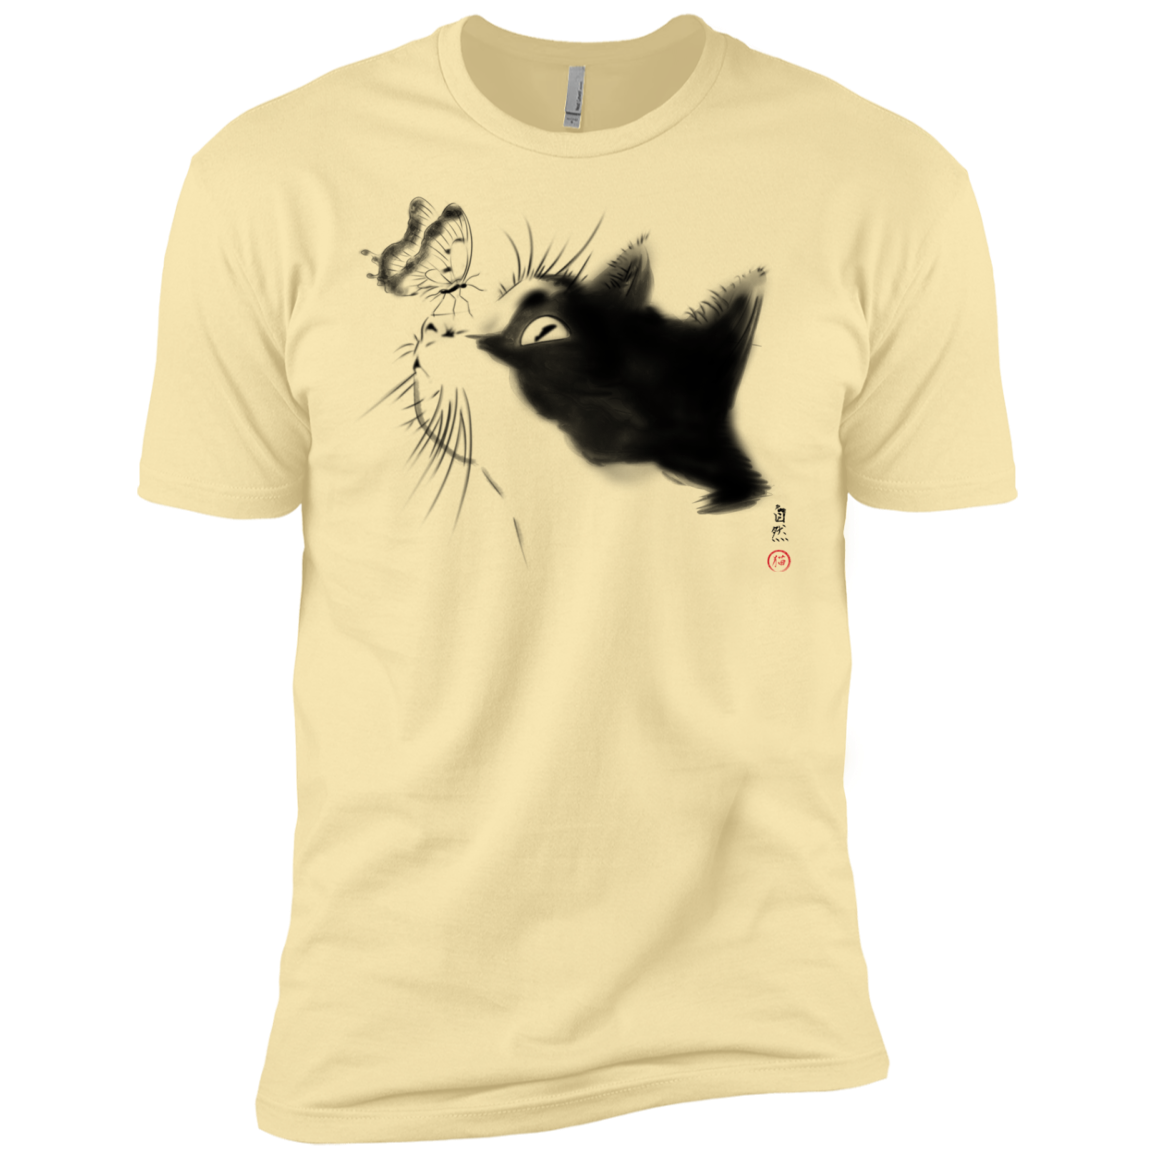 Curious Cat Men's Premium T-Shirt